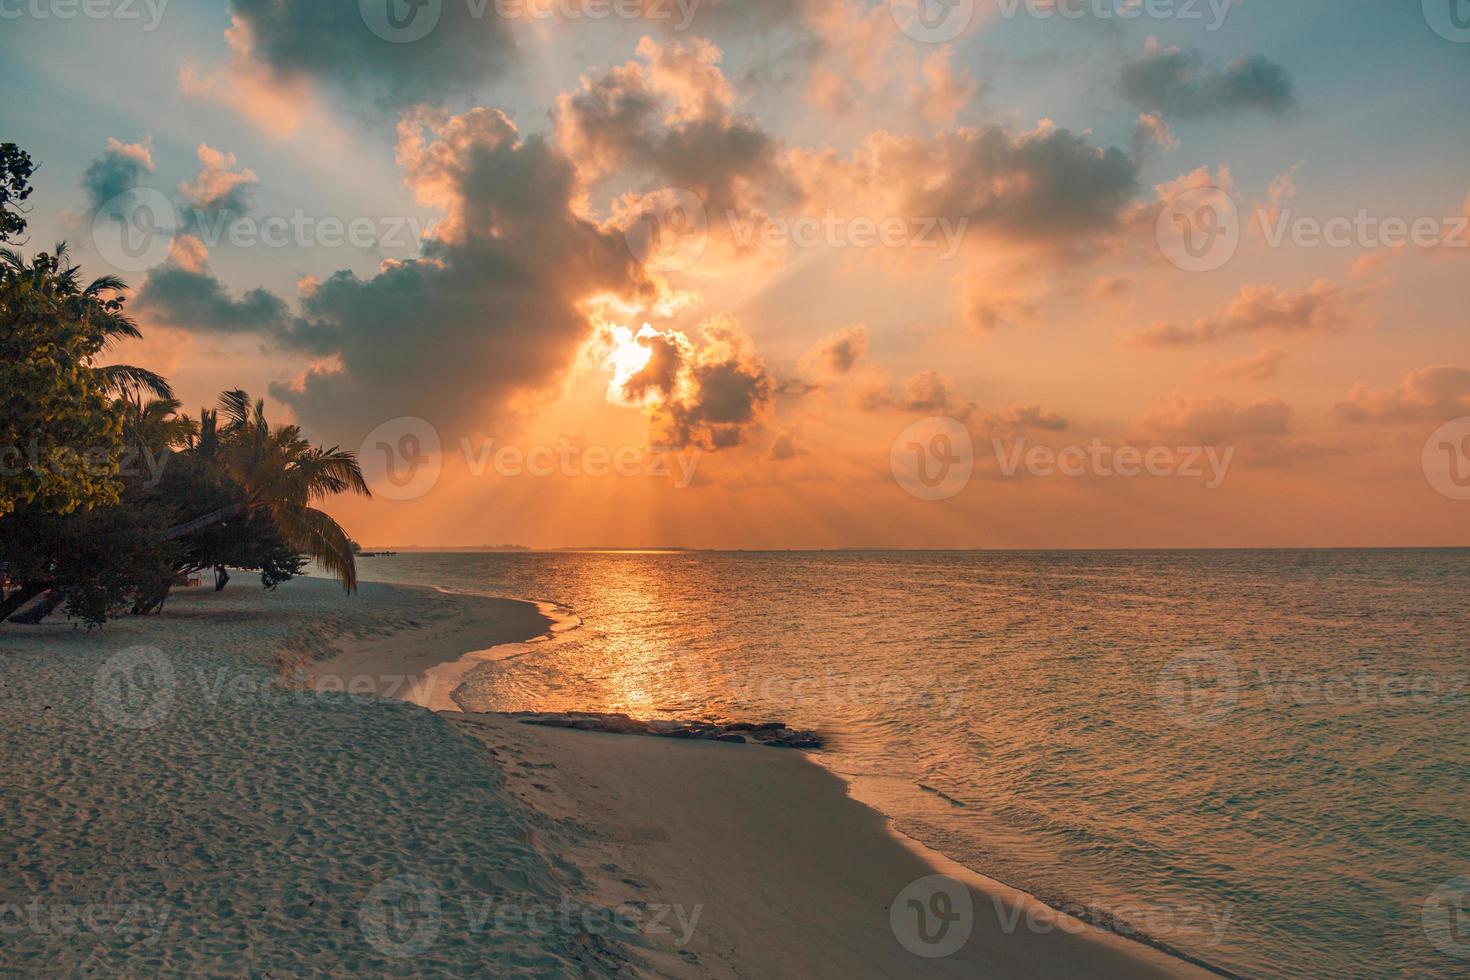 fantástica cena de praia do sol. céu colorido e nuvens vista com mar calmo e clima tropical relaxante. raios de sol, paisagem de ilha paradisíaca romântica, silhueta de palmeiras, noite de praia incrível foto